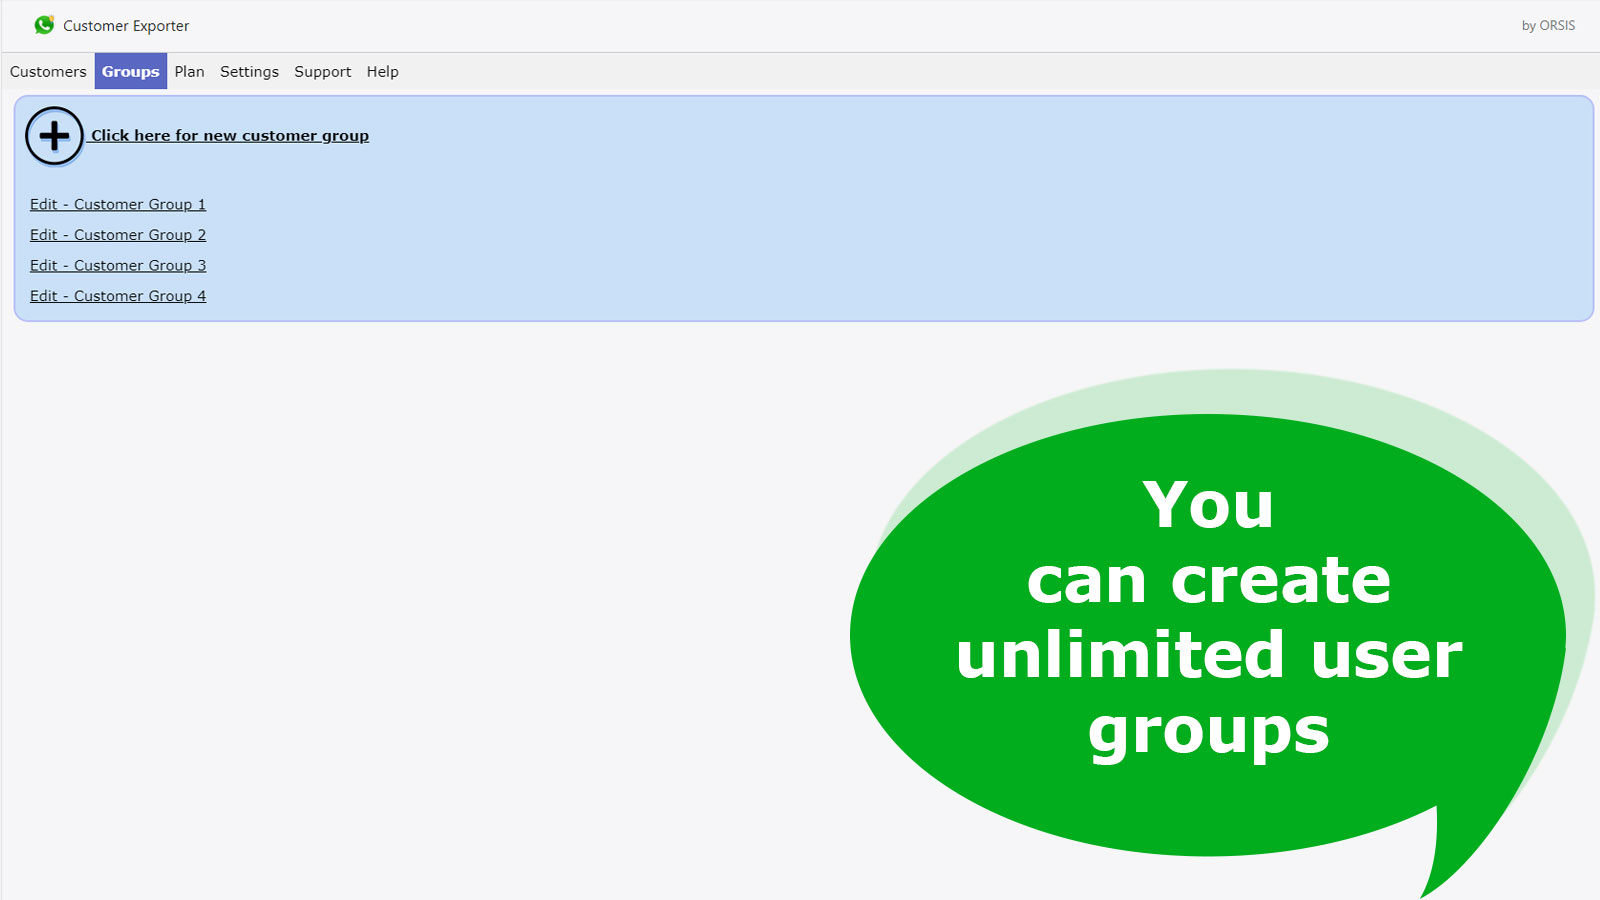 U kunt een onbeperkt aantal gebruikersgroepen aanmaken